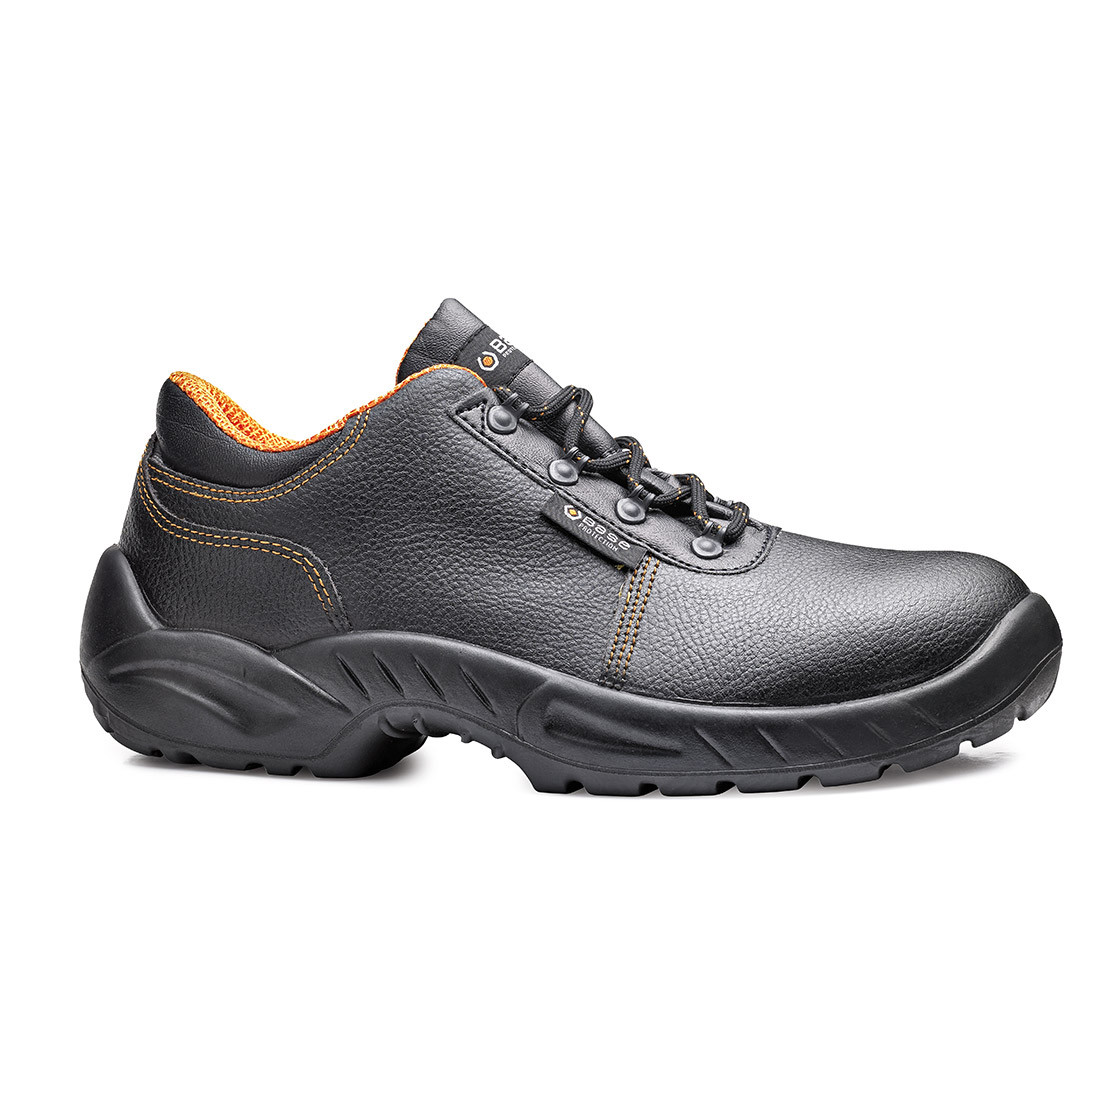 Pantofi Termini S3 SRC - Incaltaminte de protectie | Bocanci, Pantofi, Sandale, Cizme